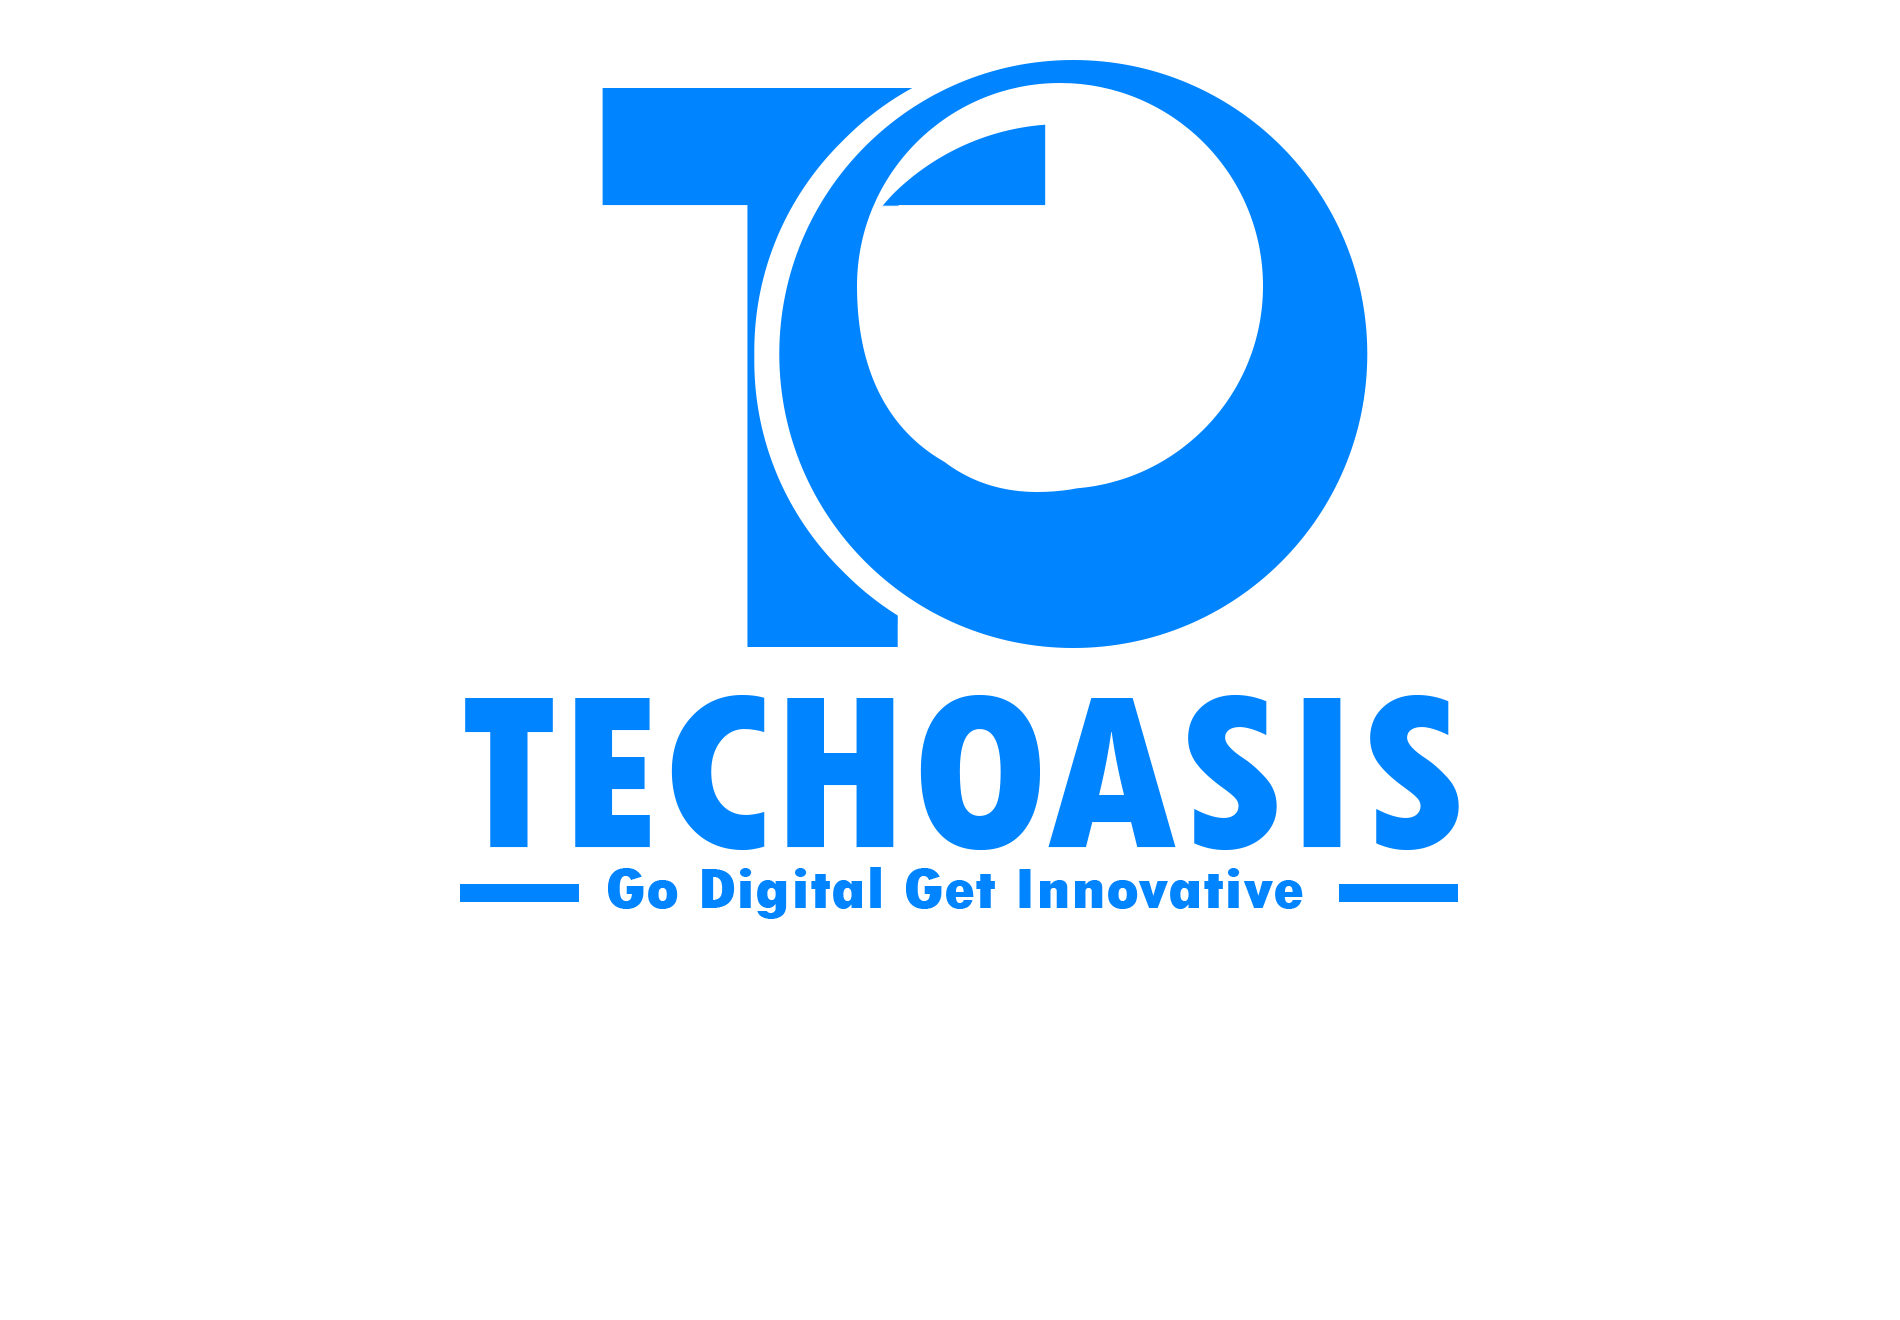 Techoasis